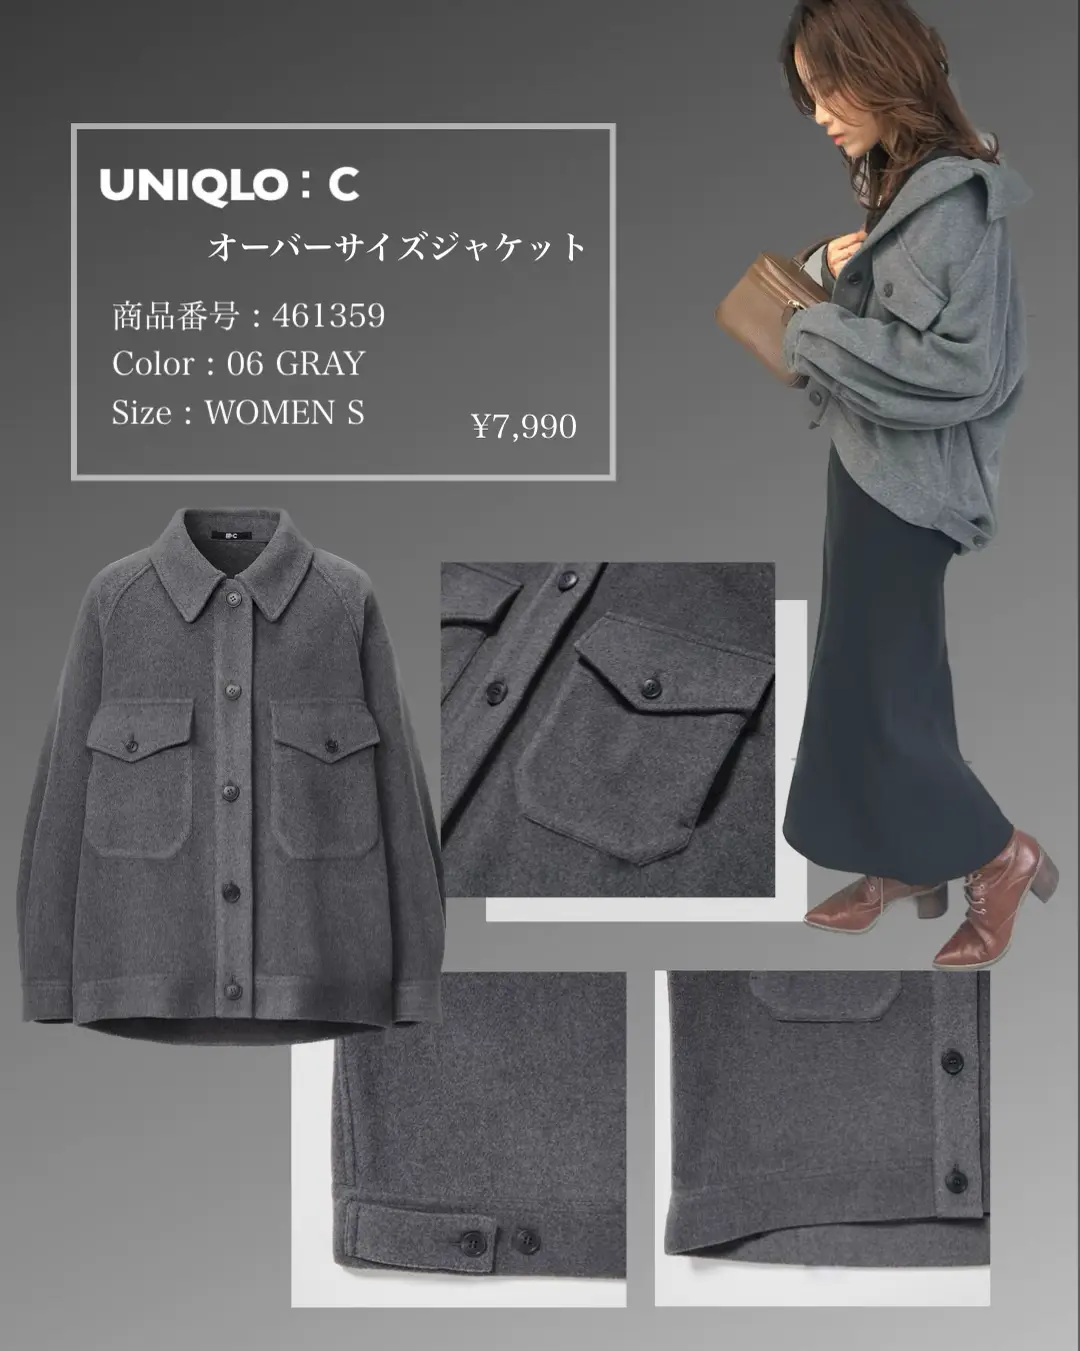 UNIQLO:C 】神シルエットのジャケット‼︎これからの羽織りに超使える ...